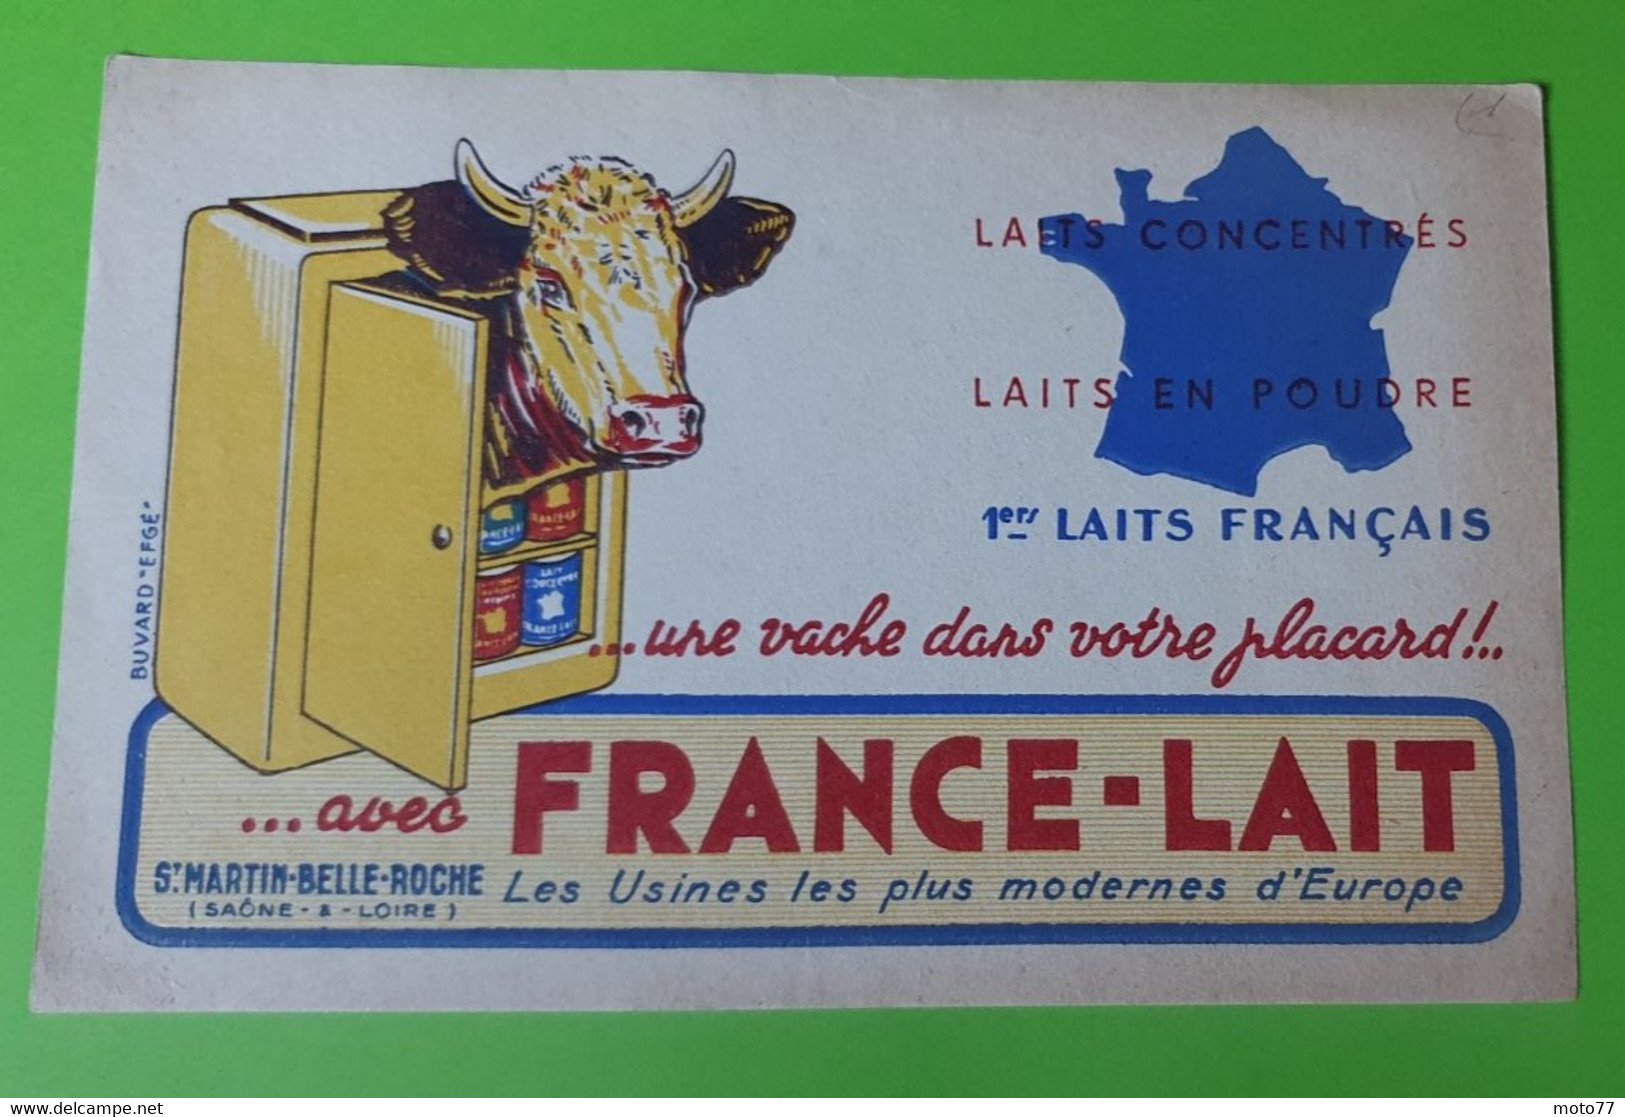 Buvard 604 - FRANCE LAIT - Vache Réfrigérateur - Etat D'usage : Voir Photos - 21.x13.5 Cm Environ - Année 1960 - Produits Laitiers